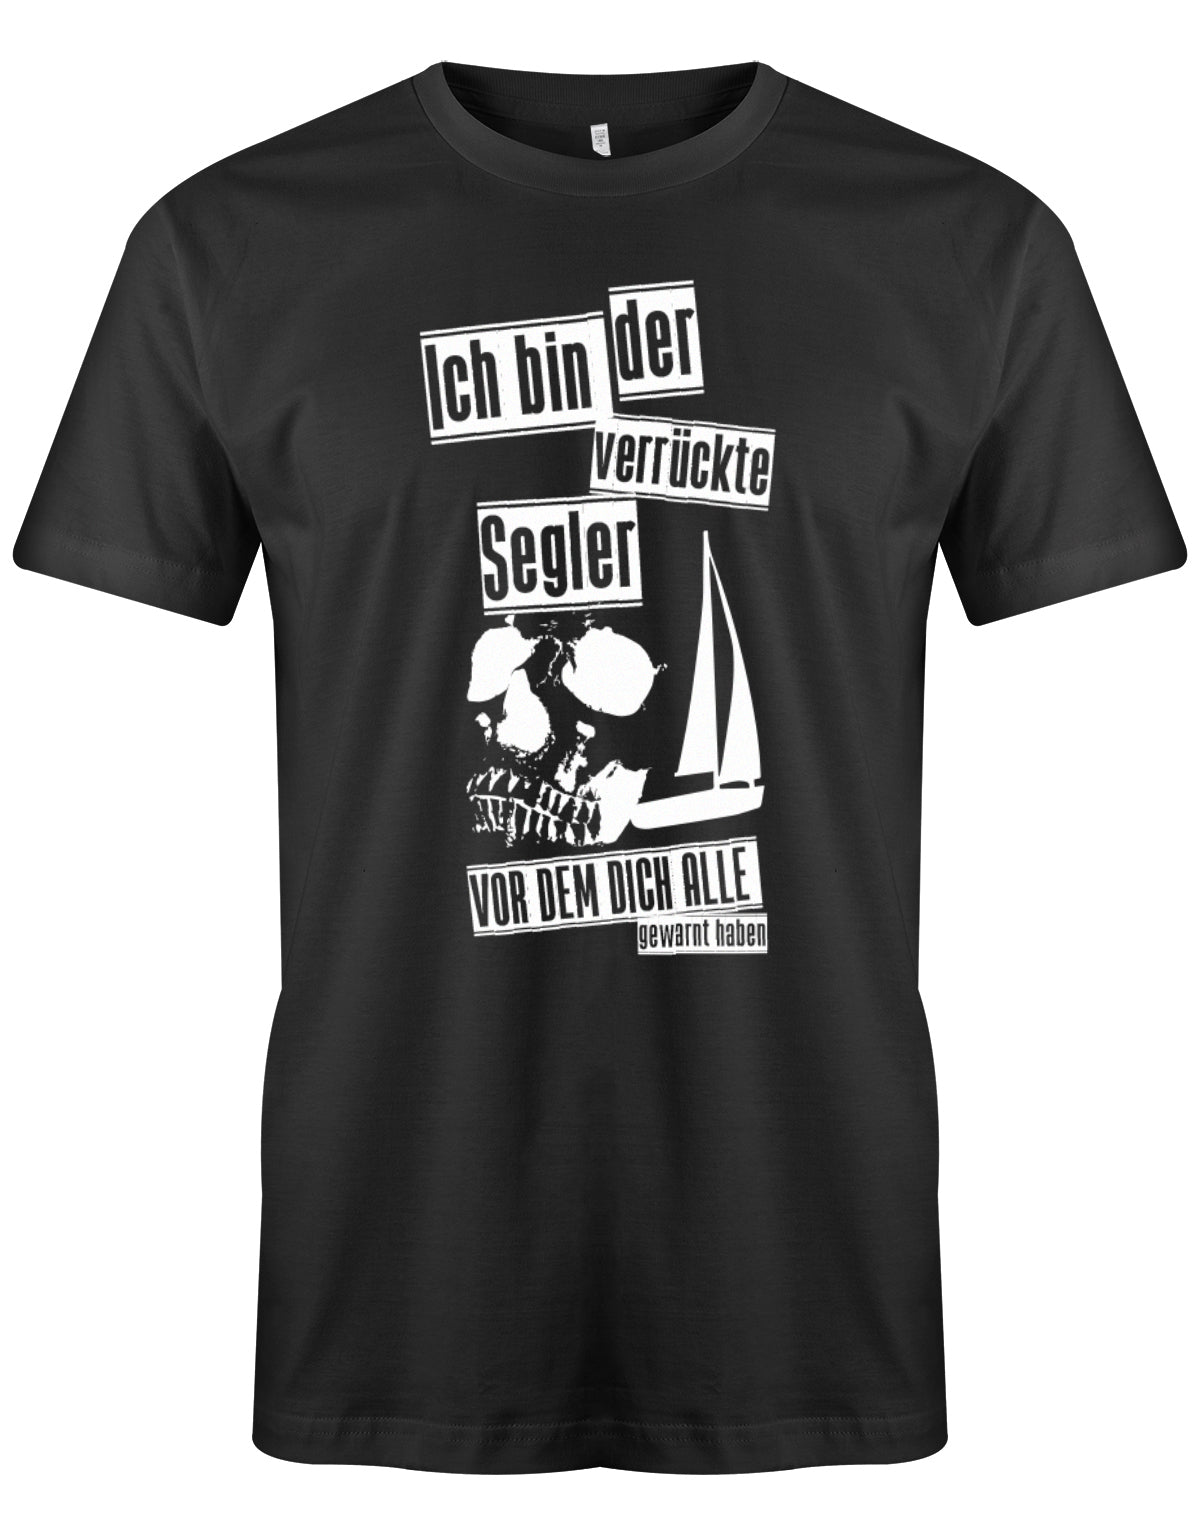 Das Segler t-shirt bedruckt mit "Ich bin der verrückte Segler vor dem dich alle gewarnt haben". Schwarz